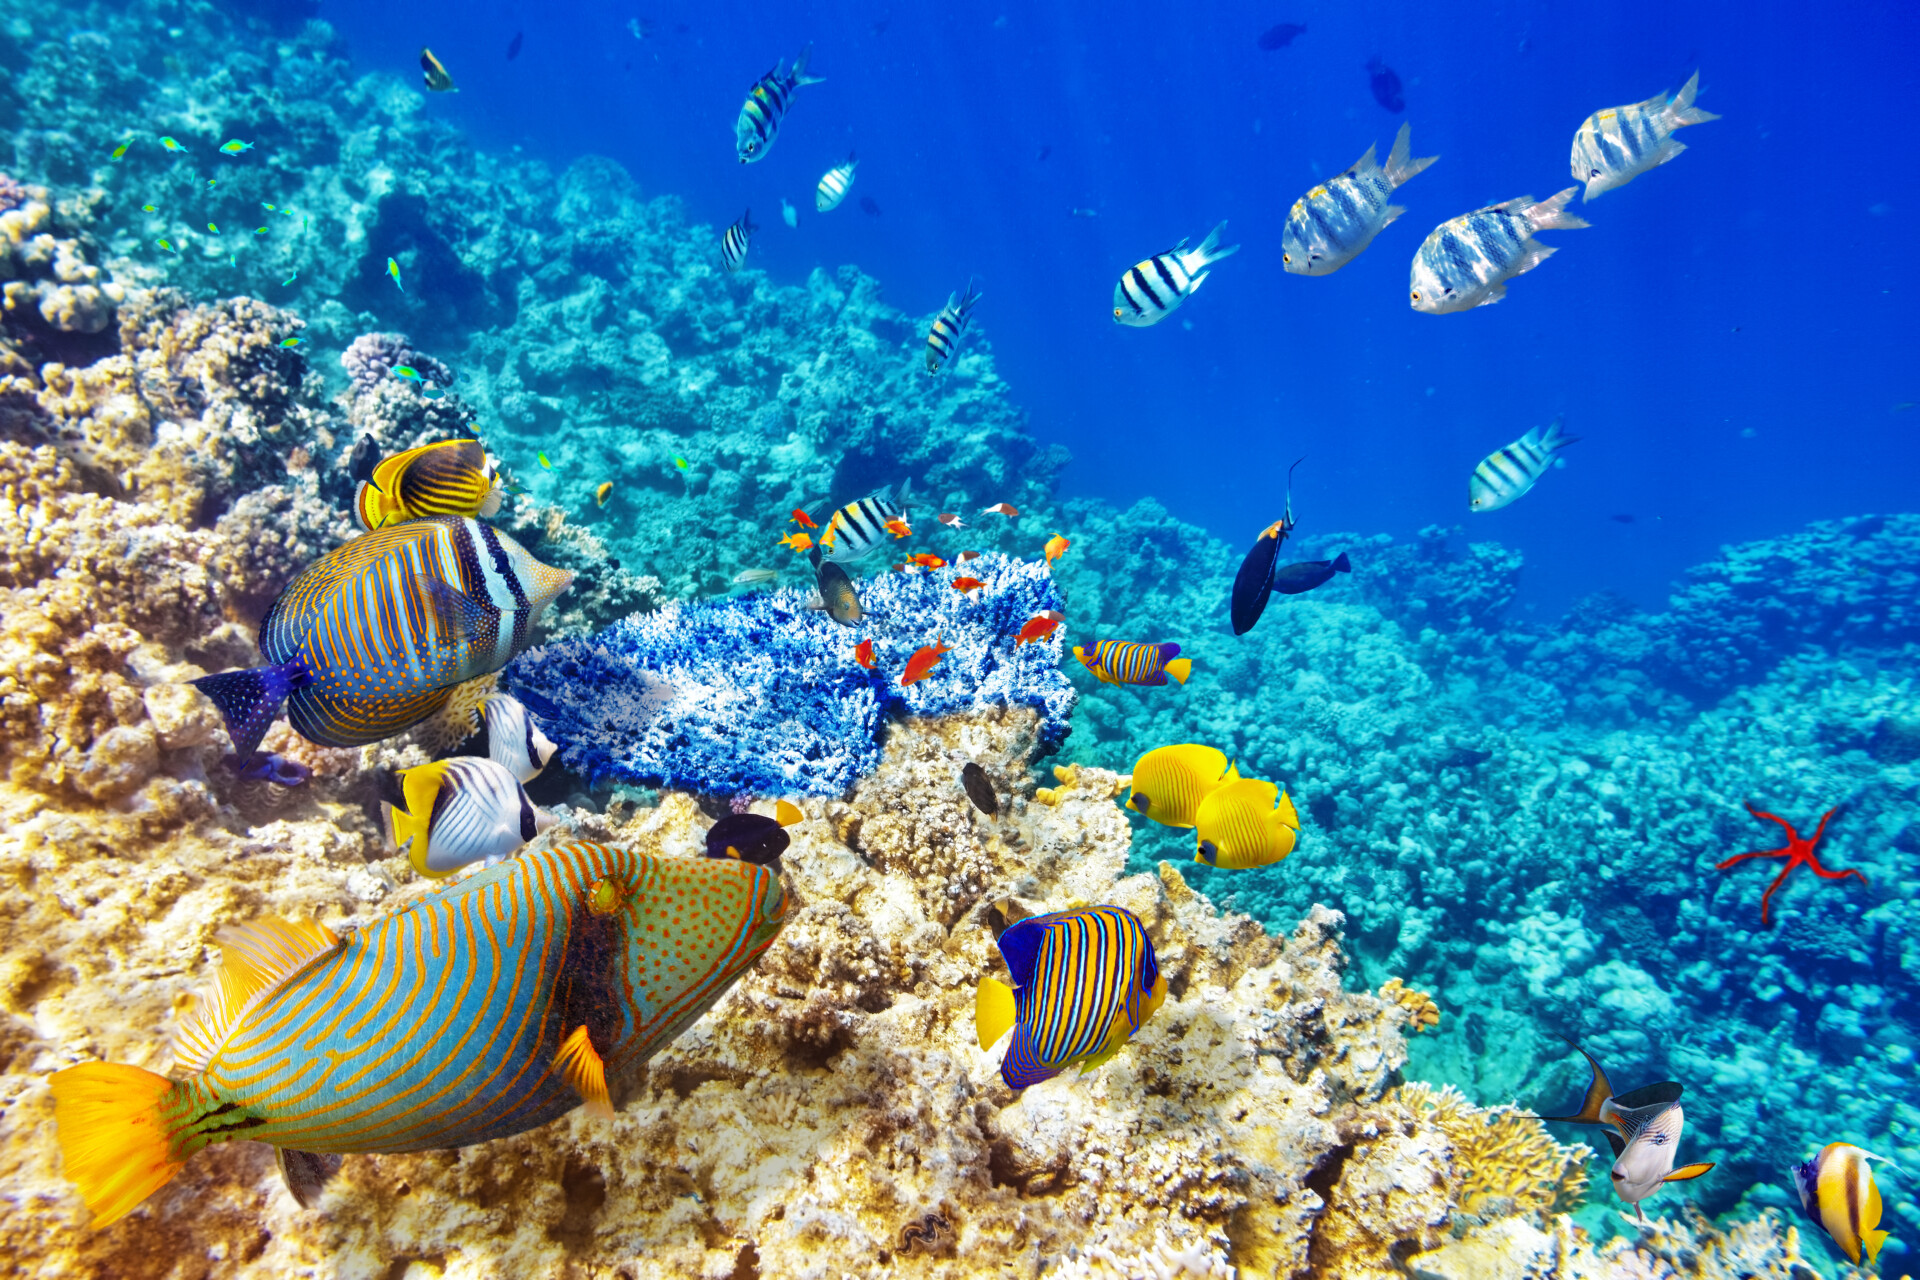 Unterwasserlandschaft mit farbenfrohen Korallen und einer Vielzahl von Fischen in verschiedenen Formen und Größen, die in einem klaren blauen Wasser des Ozeans schwimmen.